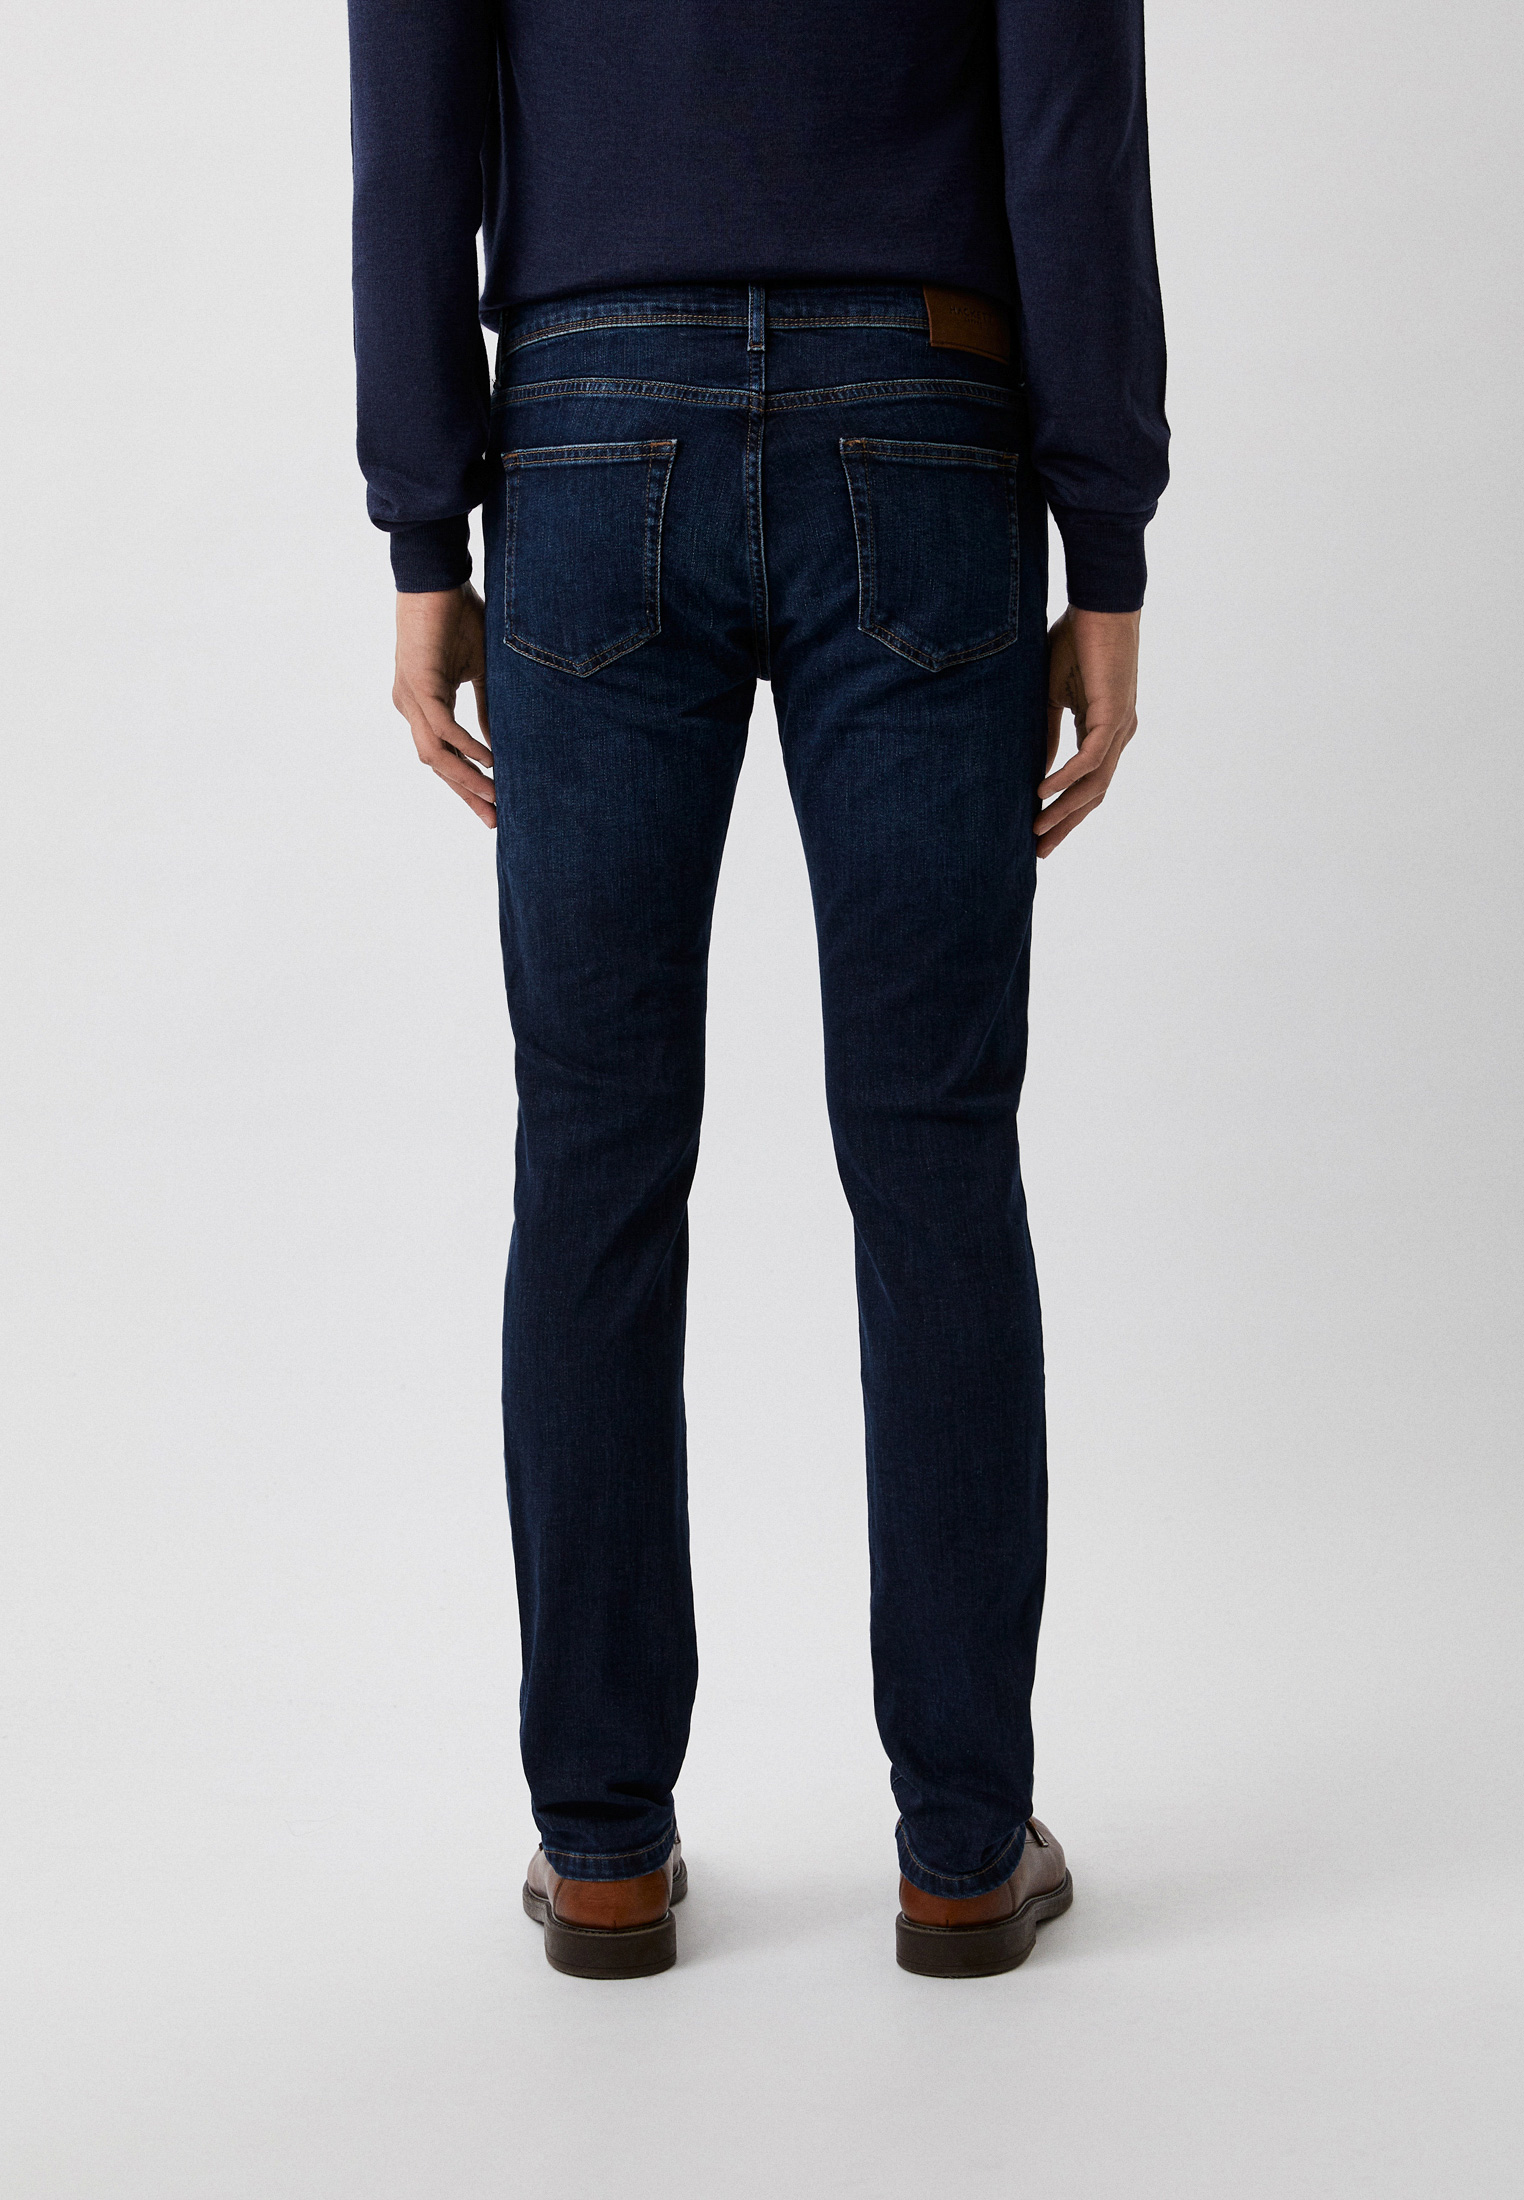 Зауженные джинсы Hackett London HM212516R: изображение 3